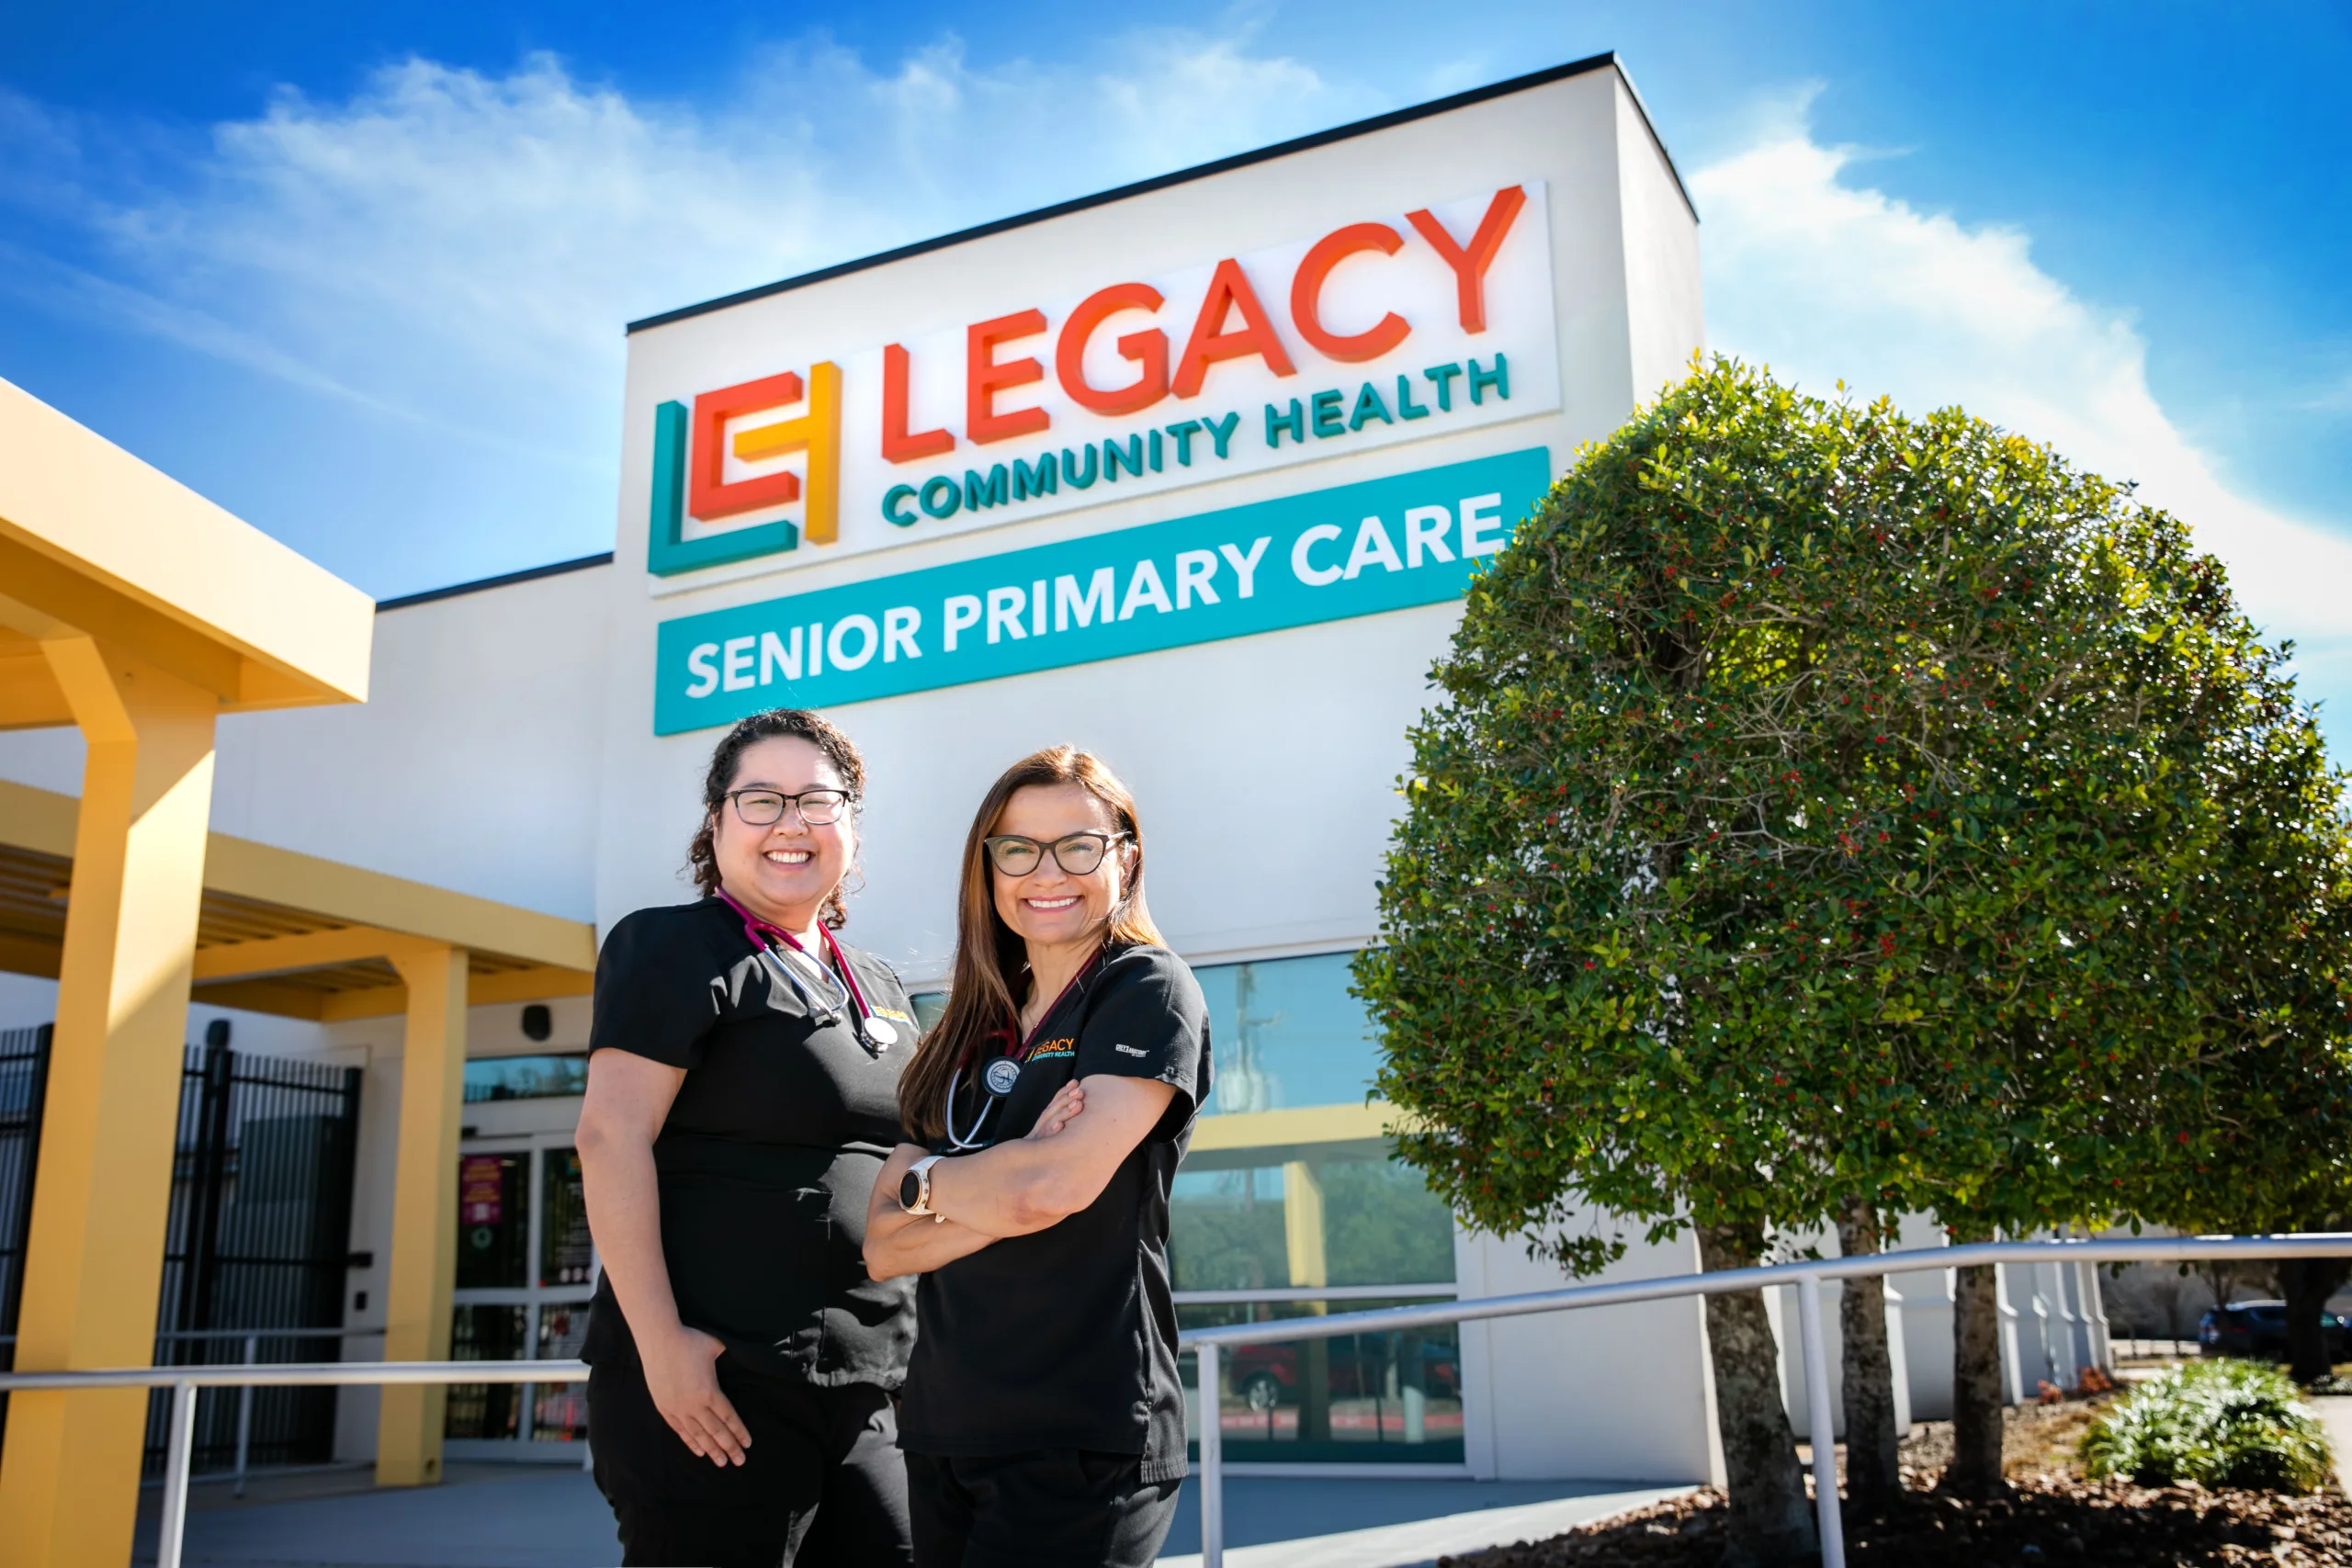 Legacy Senior Primary Care